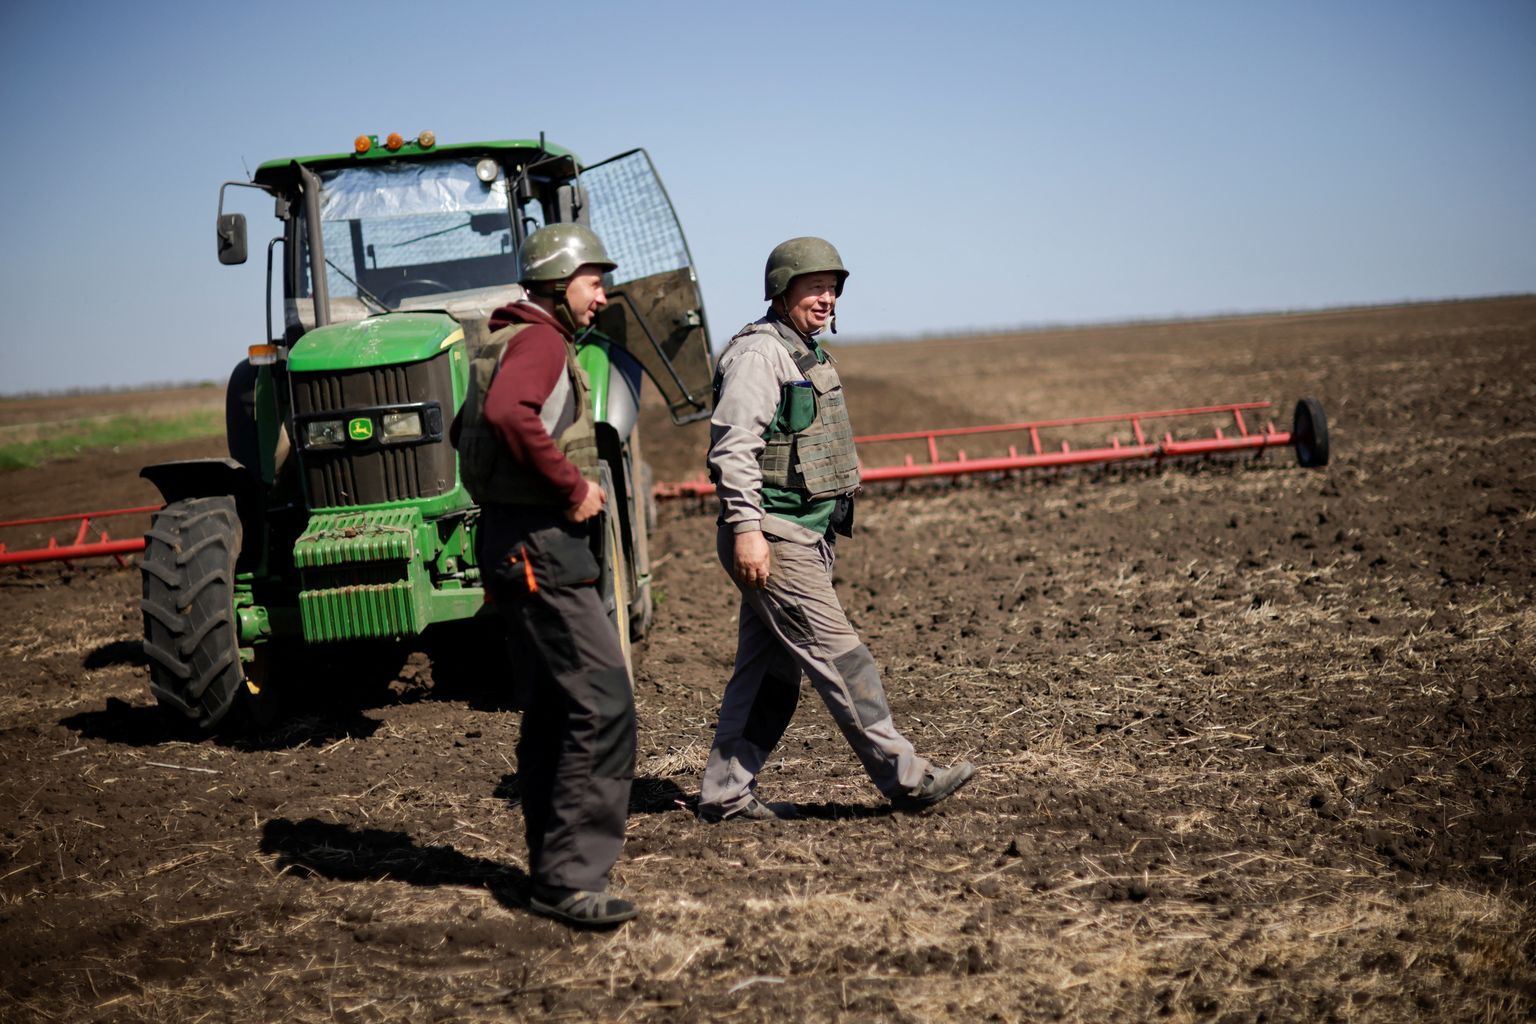 Ukraina põllumehed peavad sõja tõttu kandma põllul töötades kuuliveste ja kaitsekiivreid. Foto on tehtud mai alguse Zaporižžja oblastis